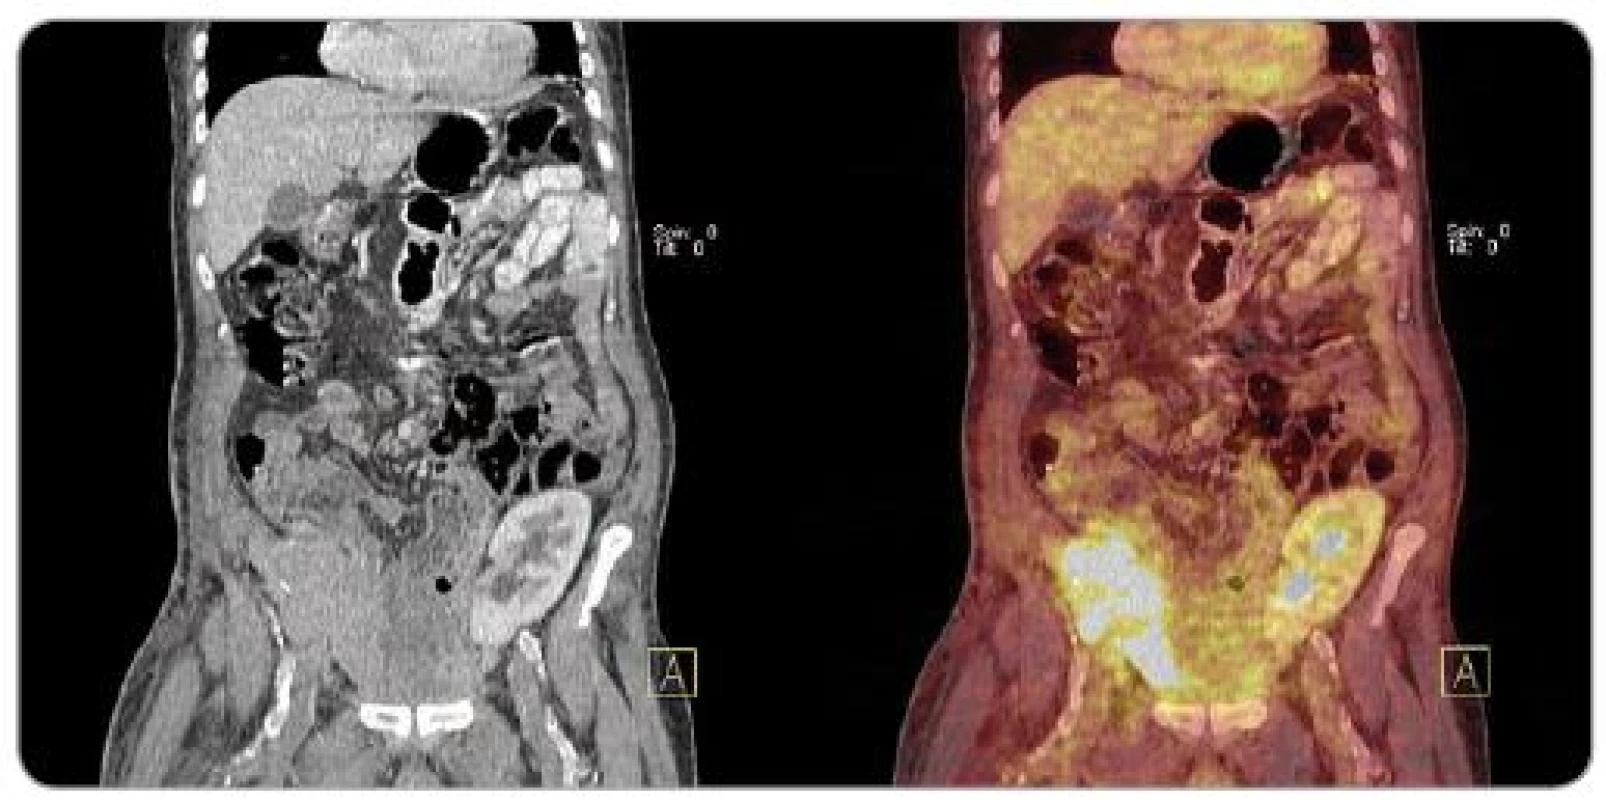 PET/ CT obraz velké metastázy karcinomu z Merkelových buněk do transplantované slinivky (pravá jáma kyčelní) u pacienta po kombinované transplantaci slinivky a ledviny (levá jáma kyčelní).